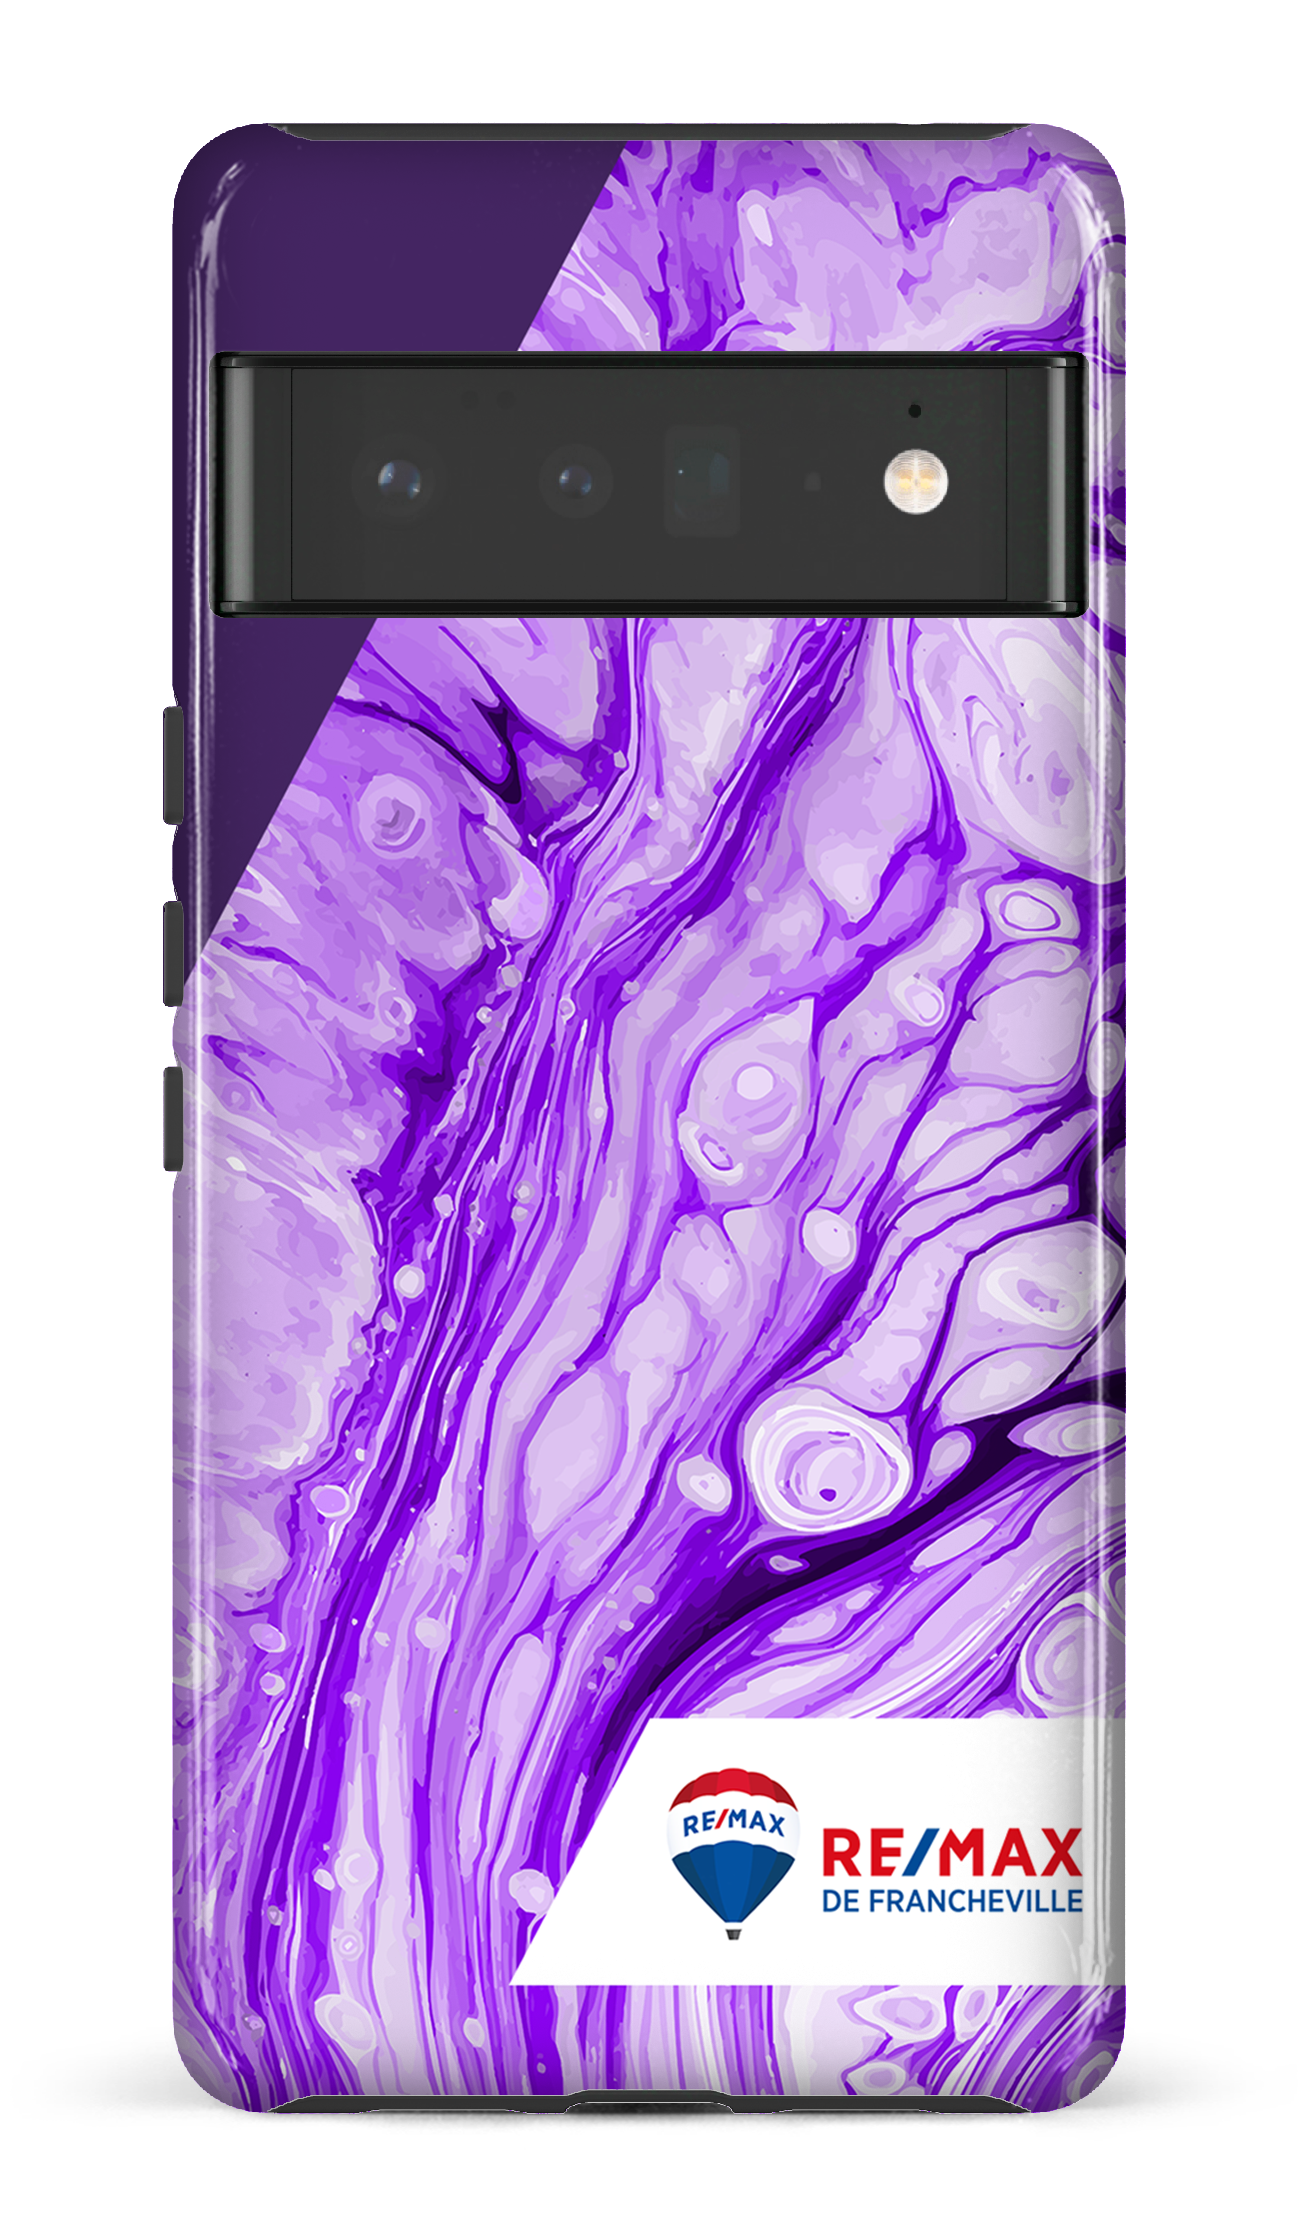 Peinture marbrée claire violette de Francheville - Google Pixel 6 pro